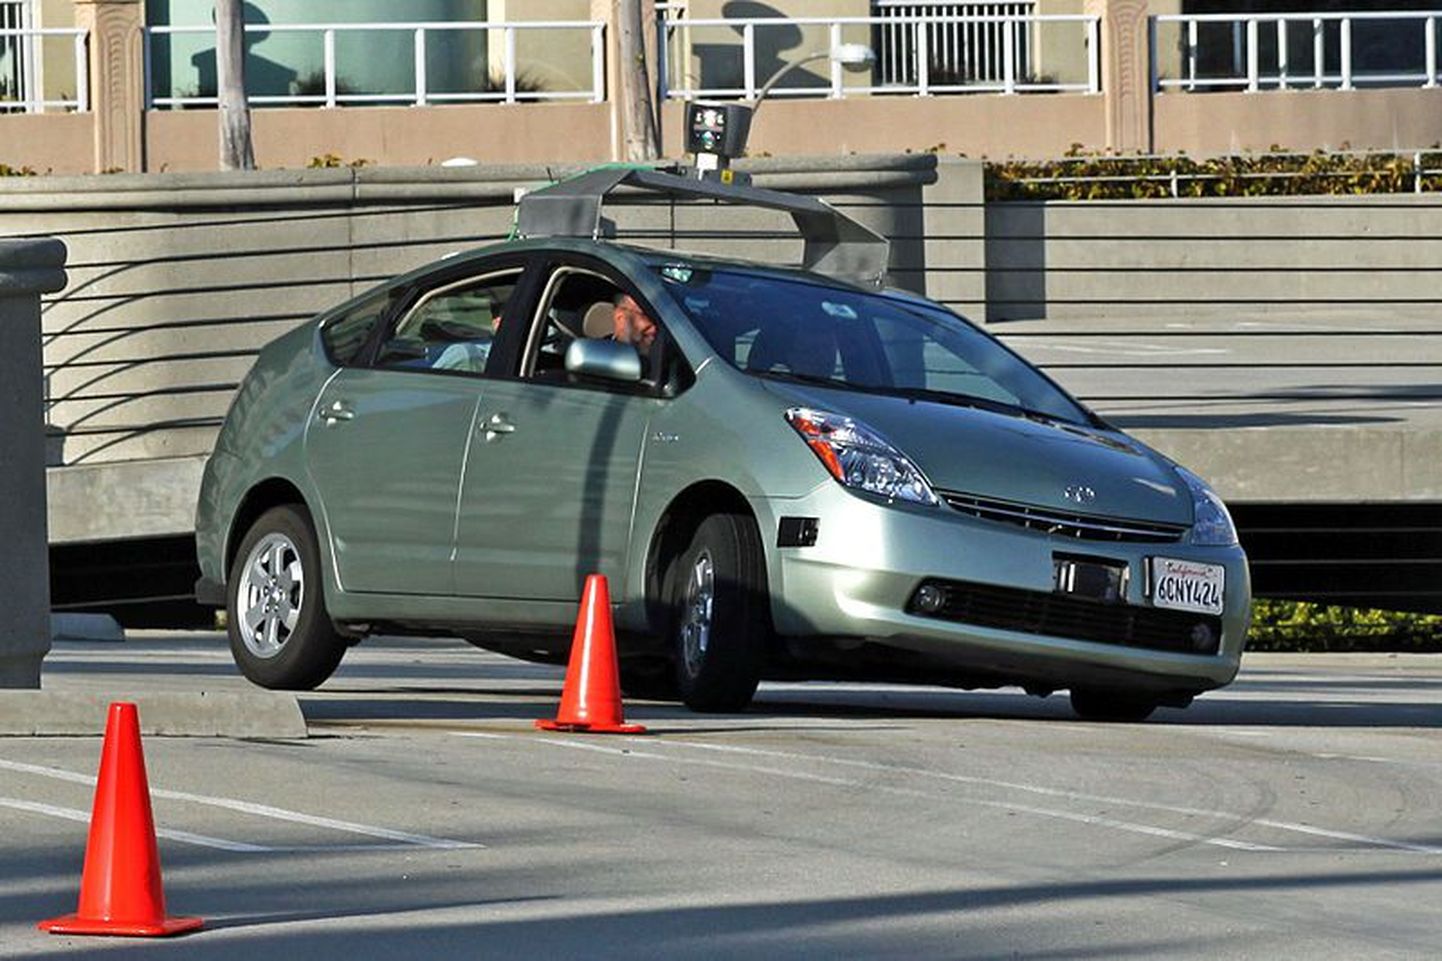 Google'i juhita süsteemi kasutav Toyota Prius.